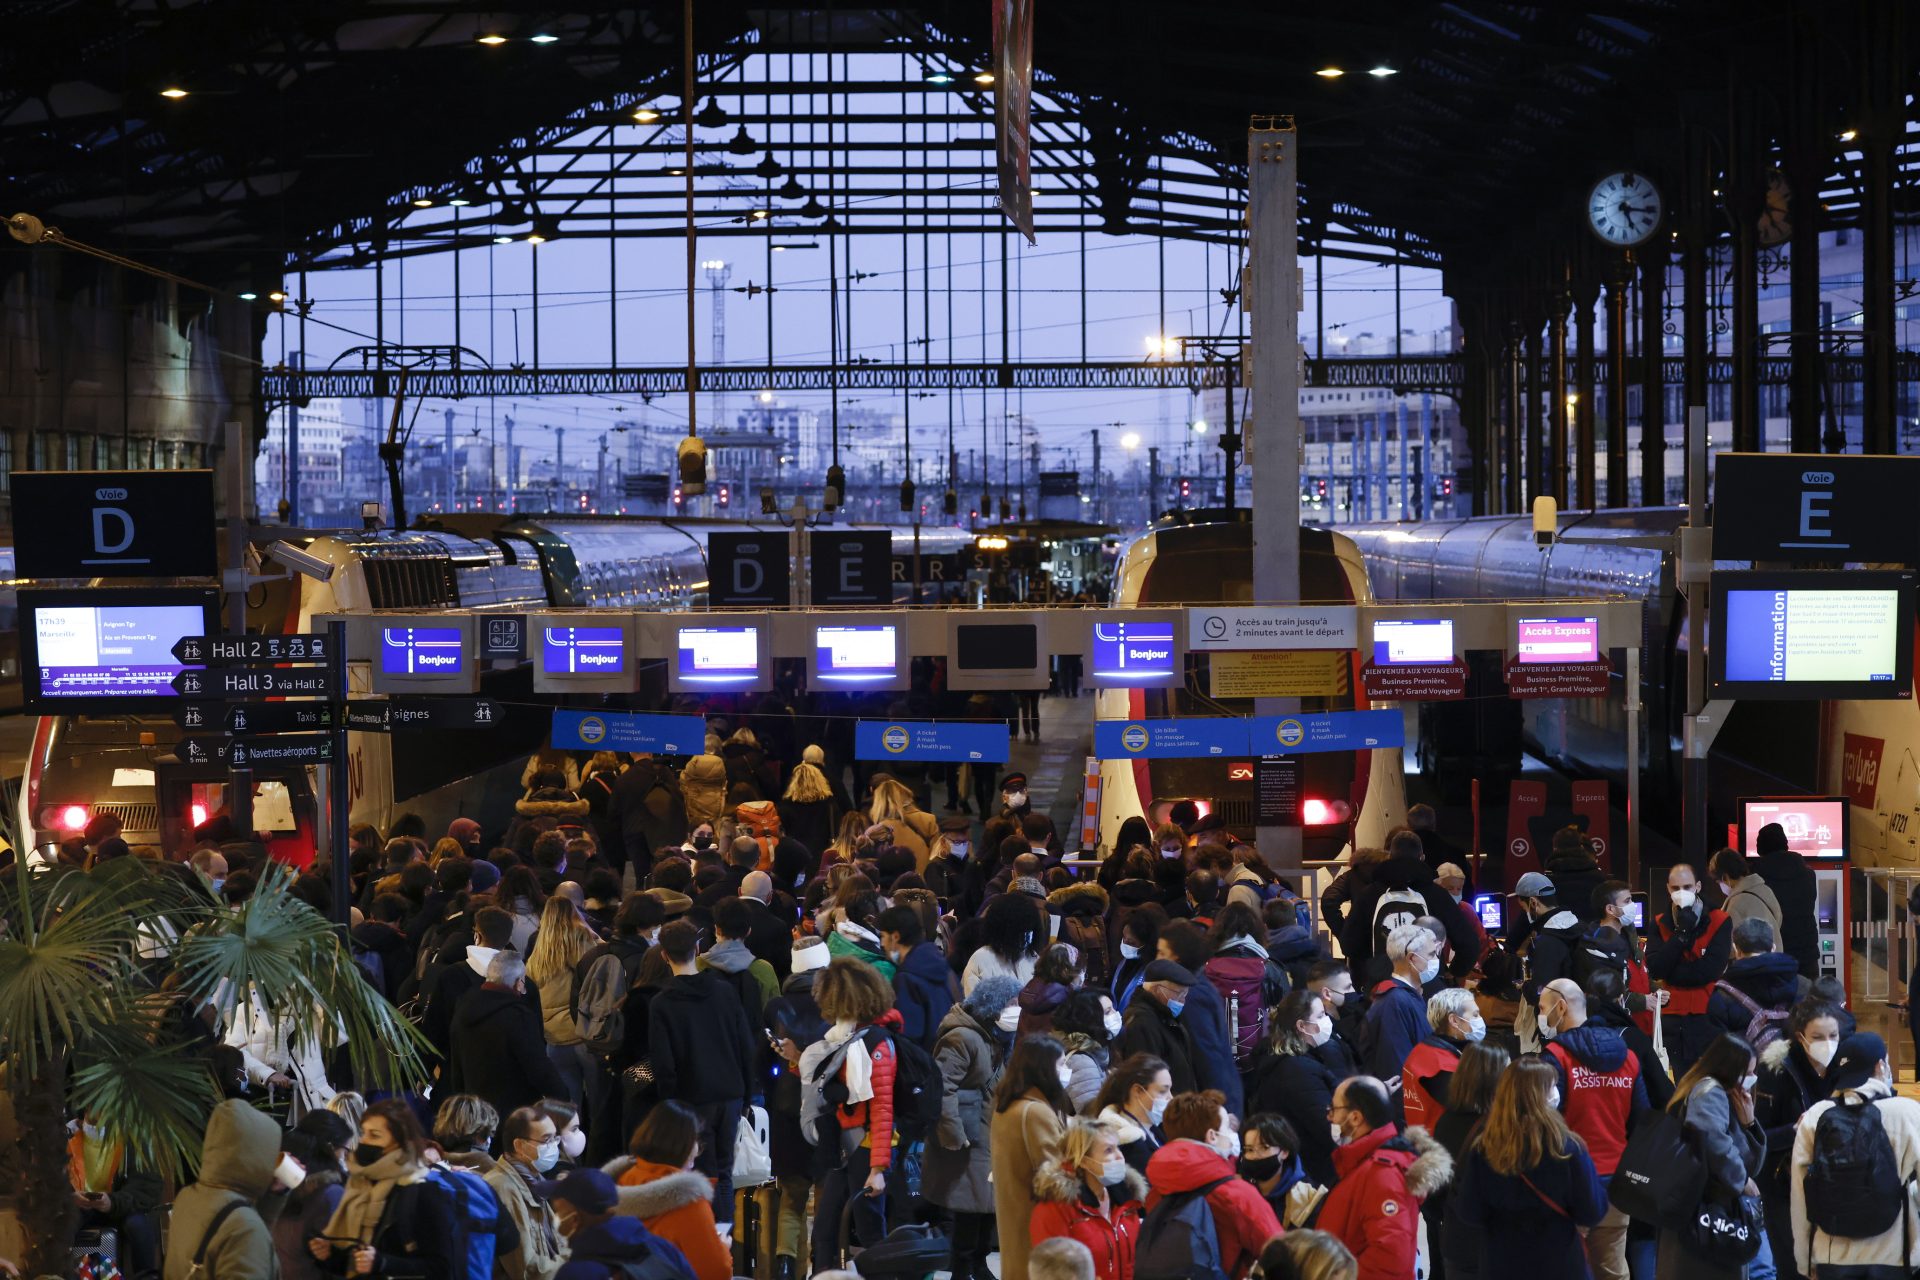 Vista de la estación parisina de Gare de Lyon.